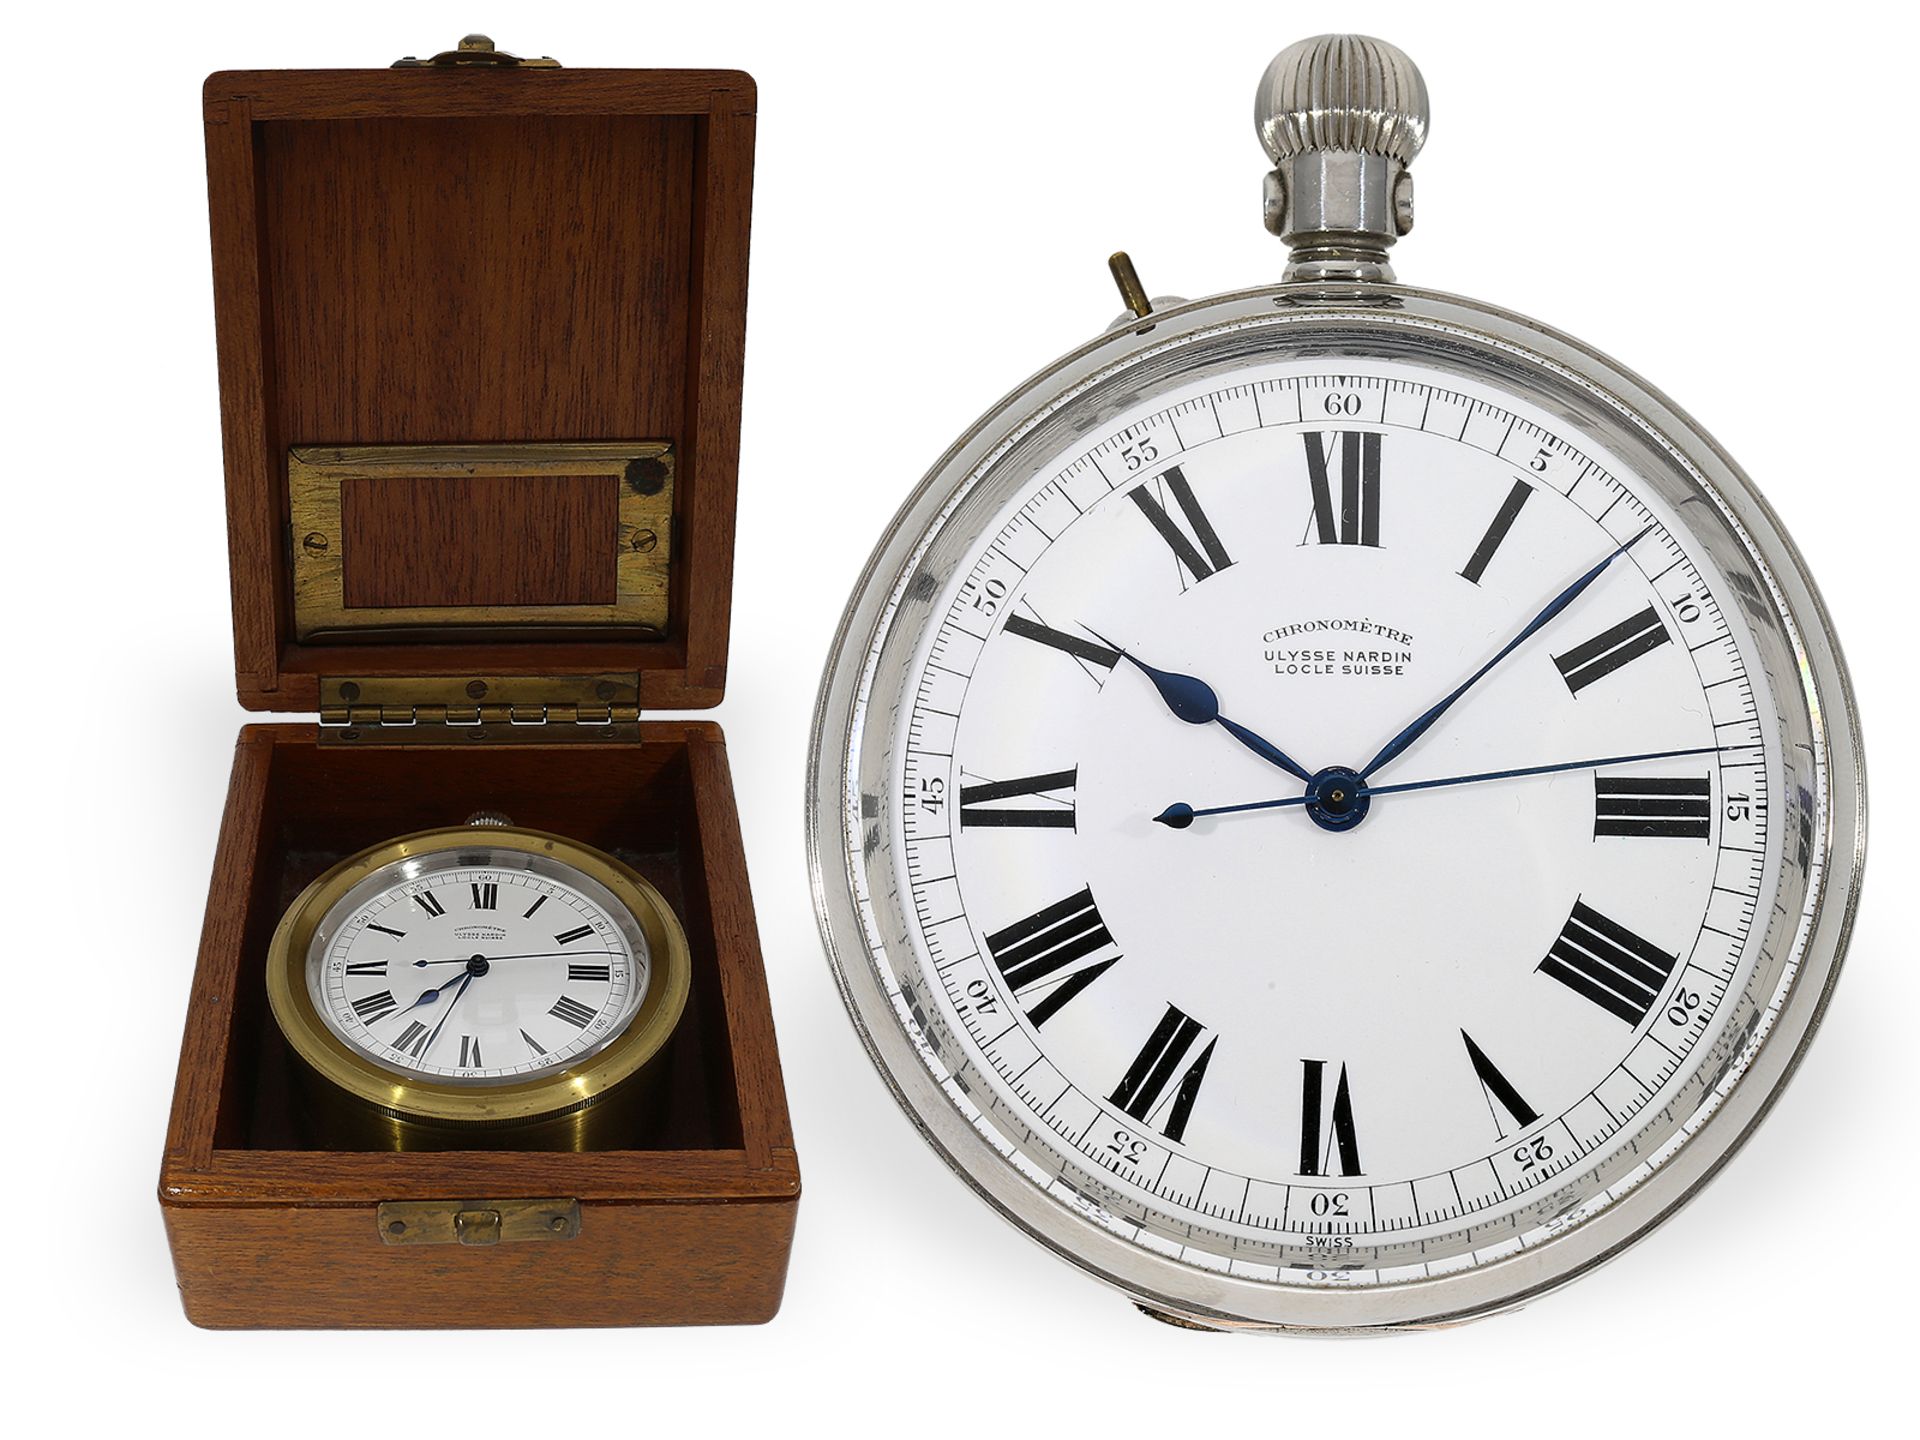 Hervorragend erhaltenes, nahezu neuwertiges Beobachtungschronometer, Ulysse Nardin für das englische